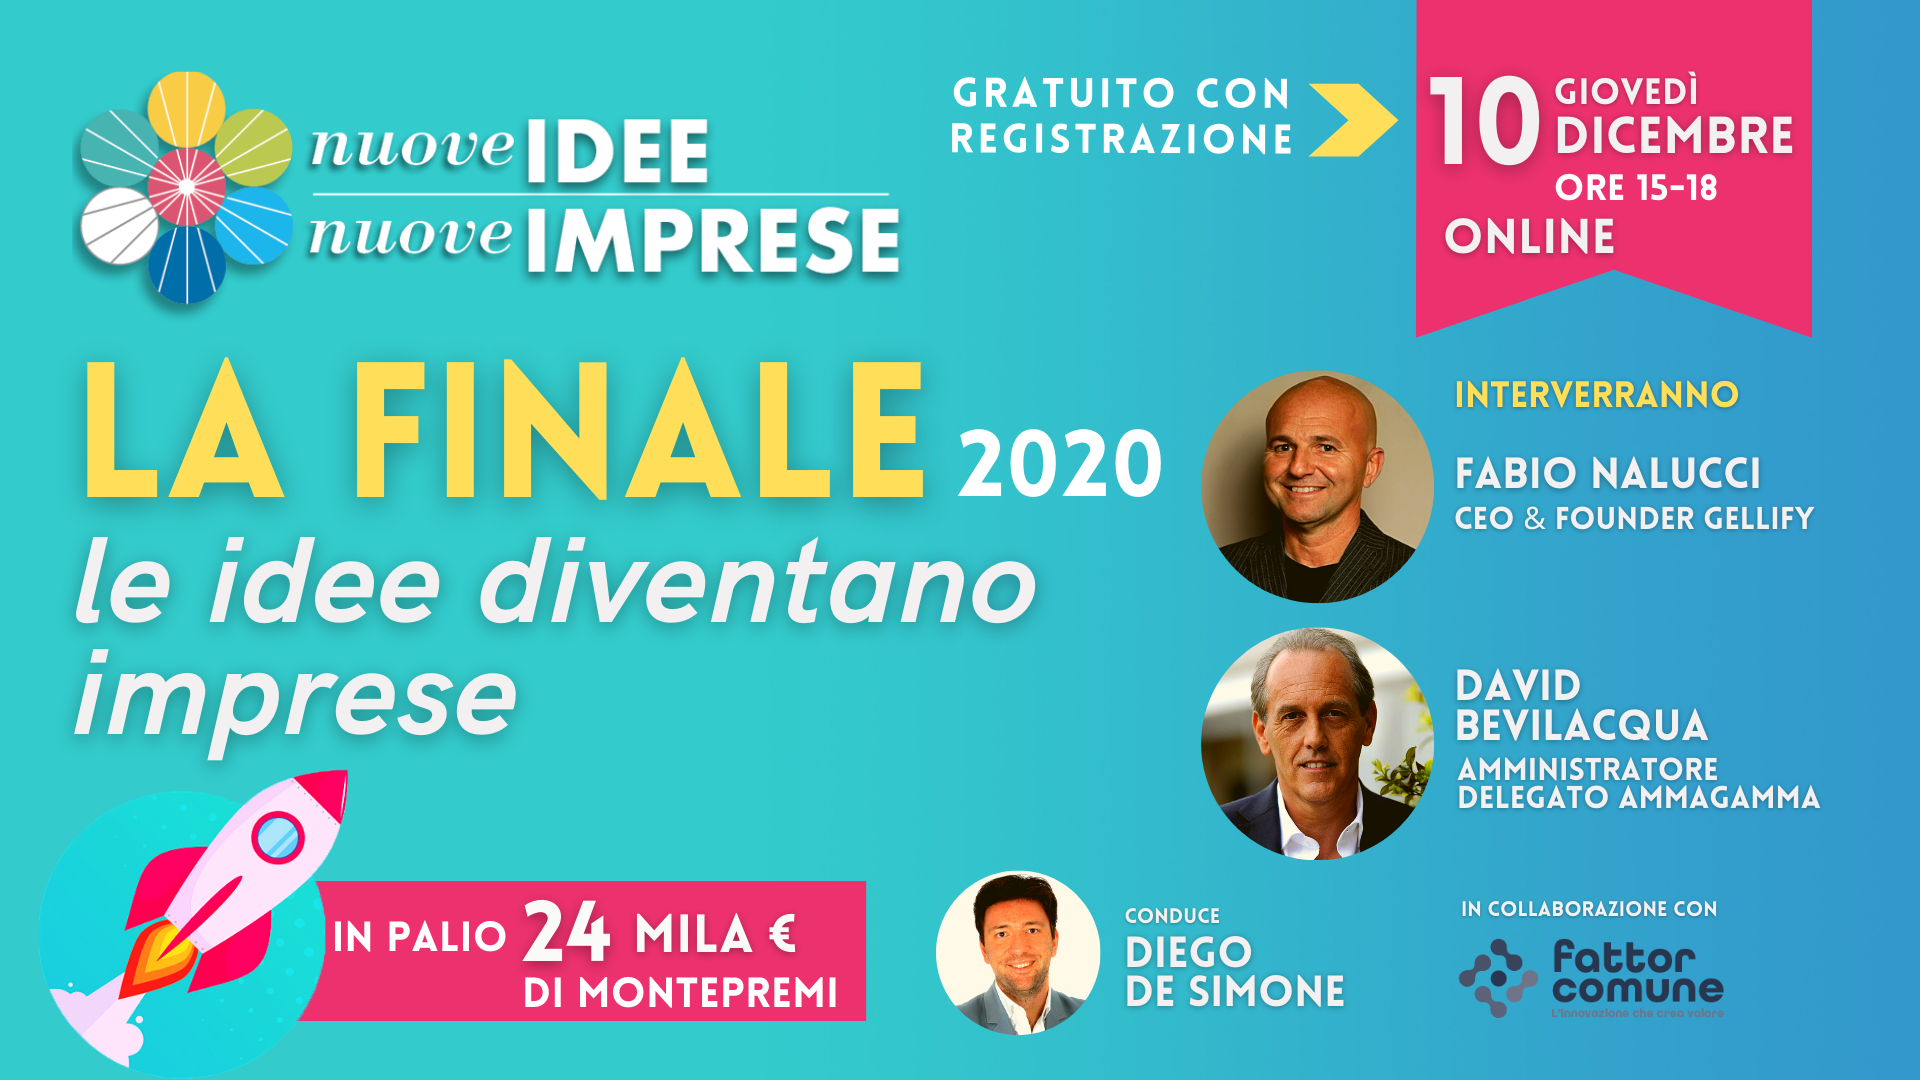 Il 10 dicembre la Finale di Nuove Idee Nuove Imprese 2020